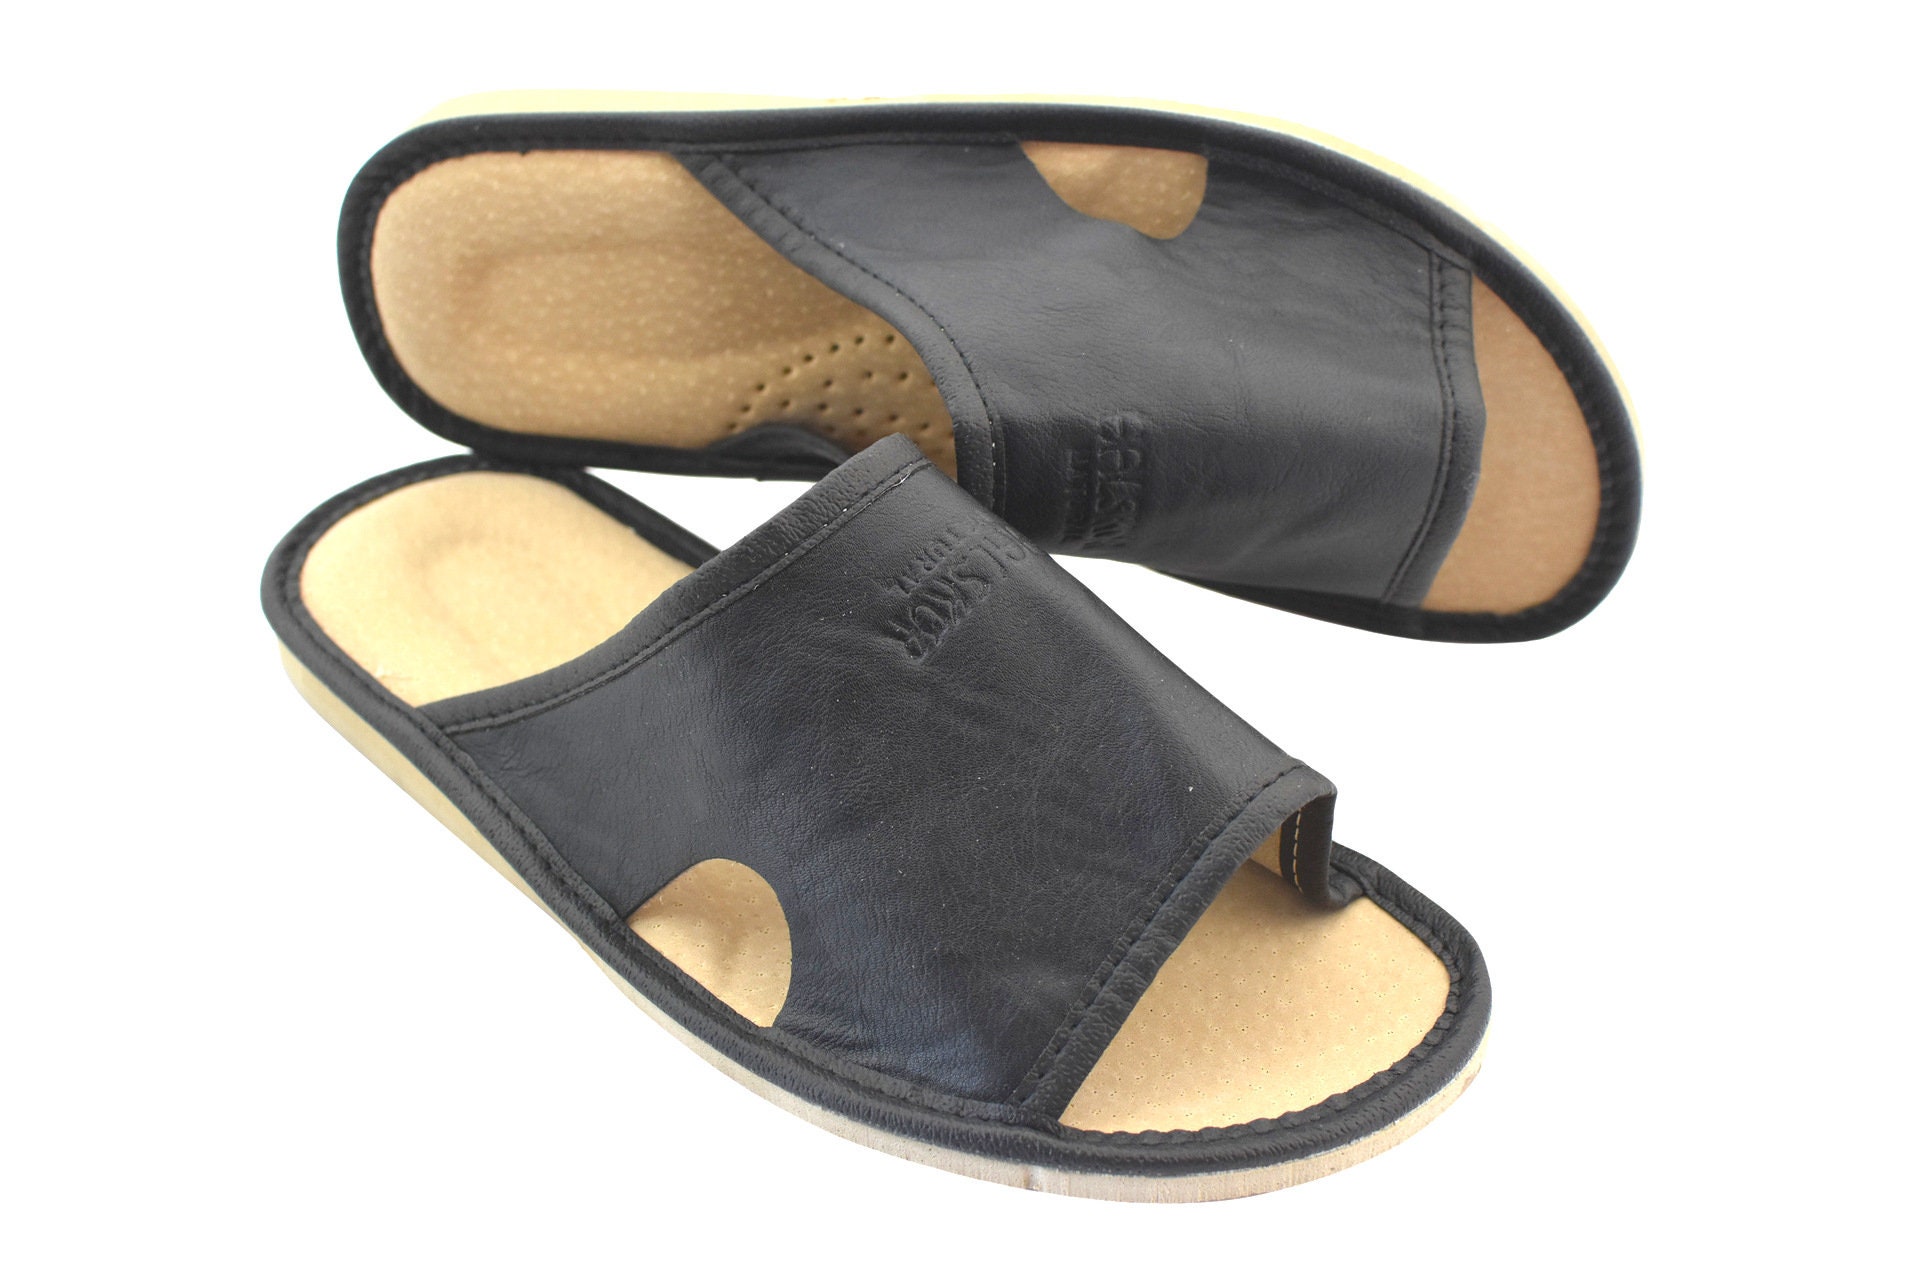 Men's slippers leather highlander flip flops la | Etsy